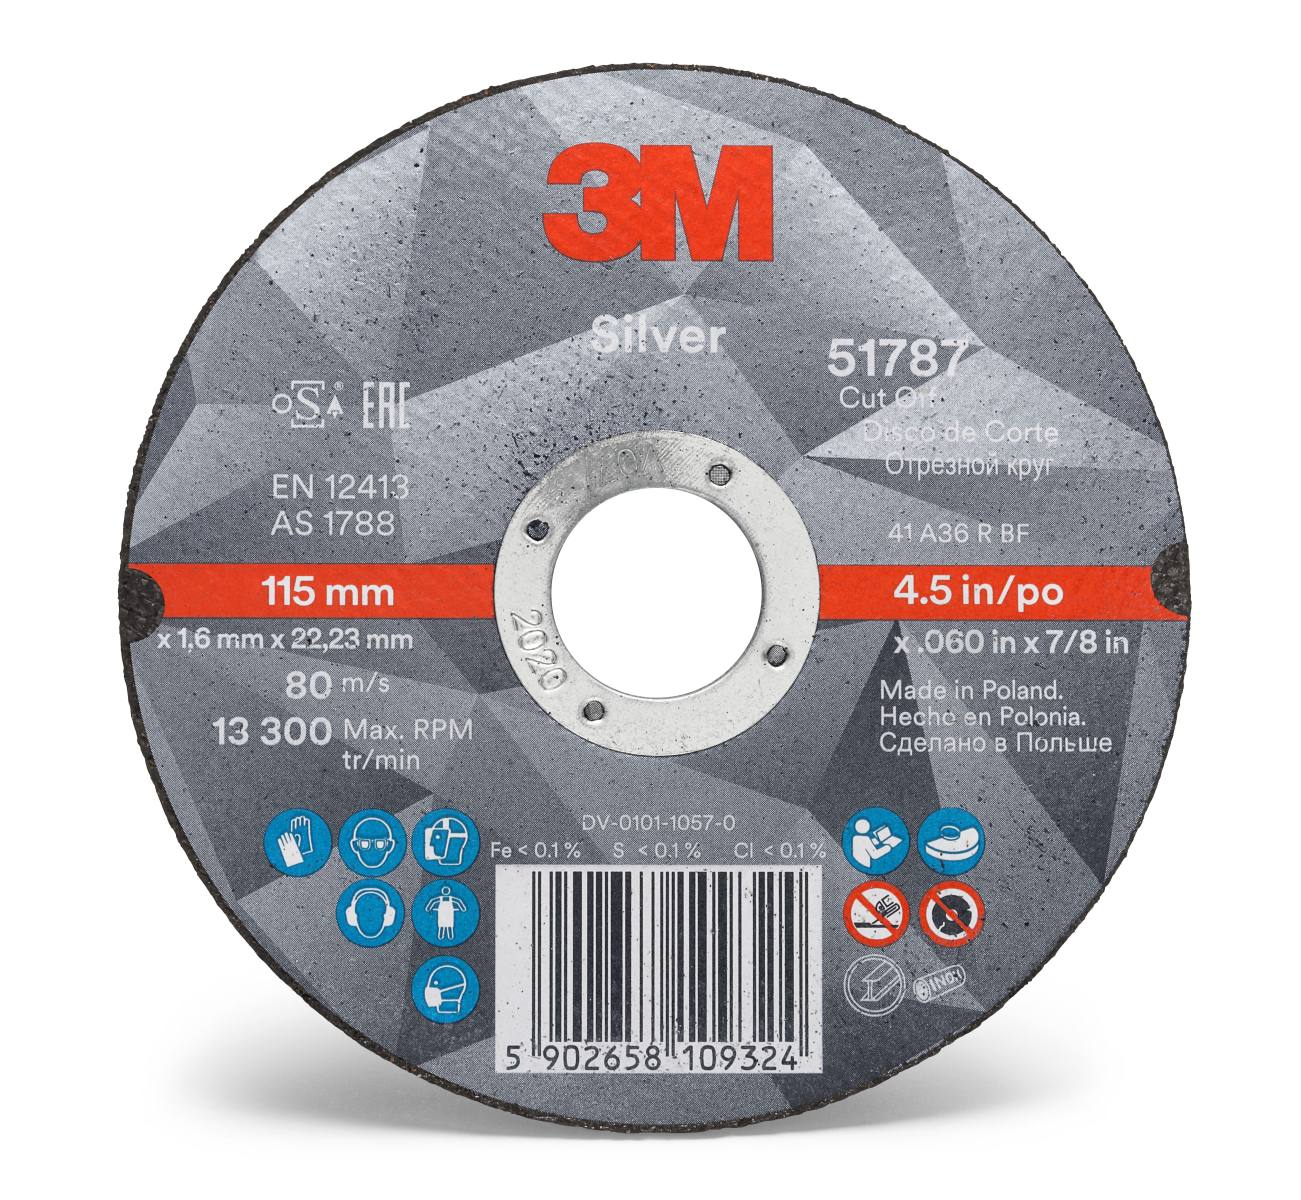 3M Silver Cut-Off Wheel cutting-off wheel, 75 mm, 1.0 mm, 6 mm, T41, 51765